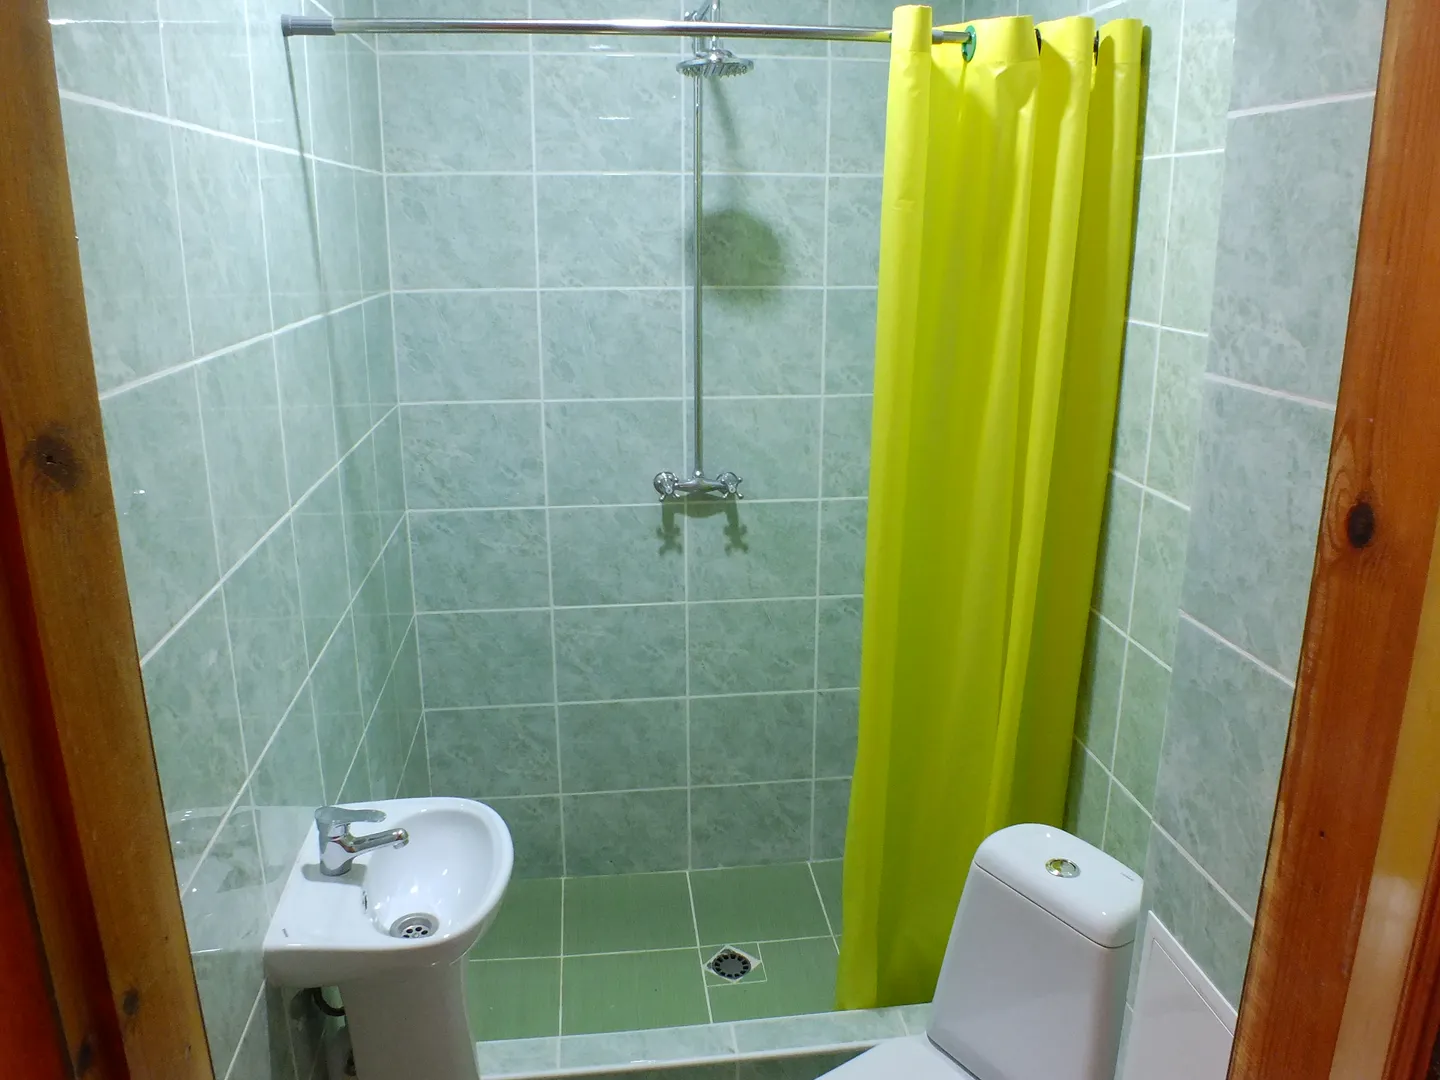 Ванная комната имеется в каждом номере.Туалетные принадлежности входят в стоимость.